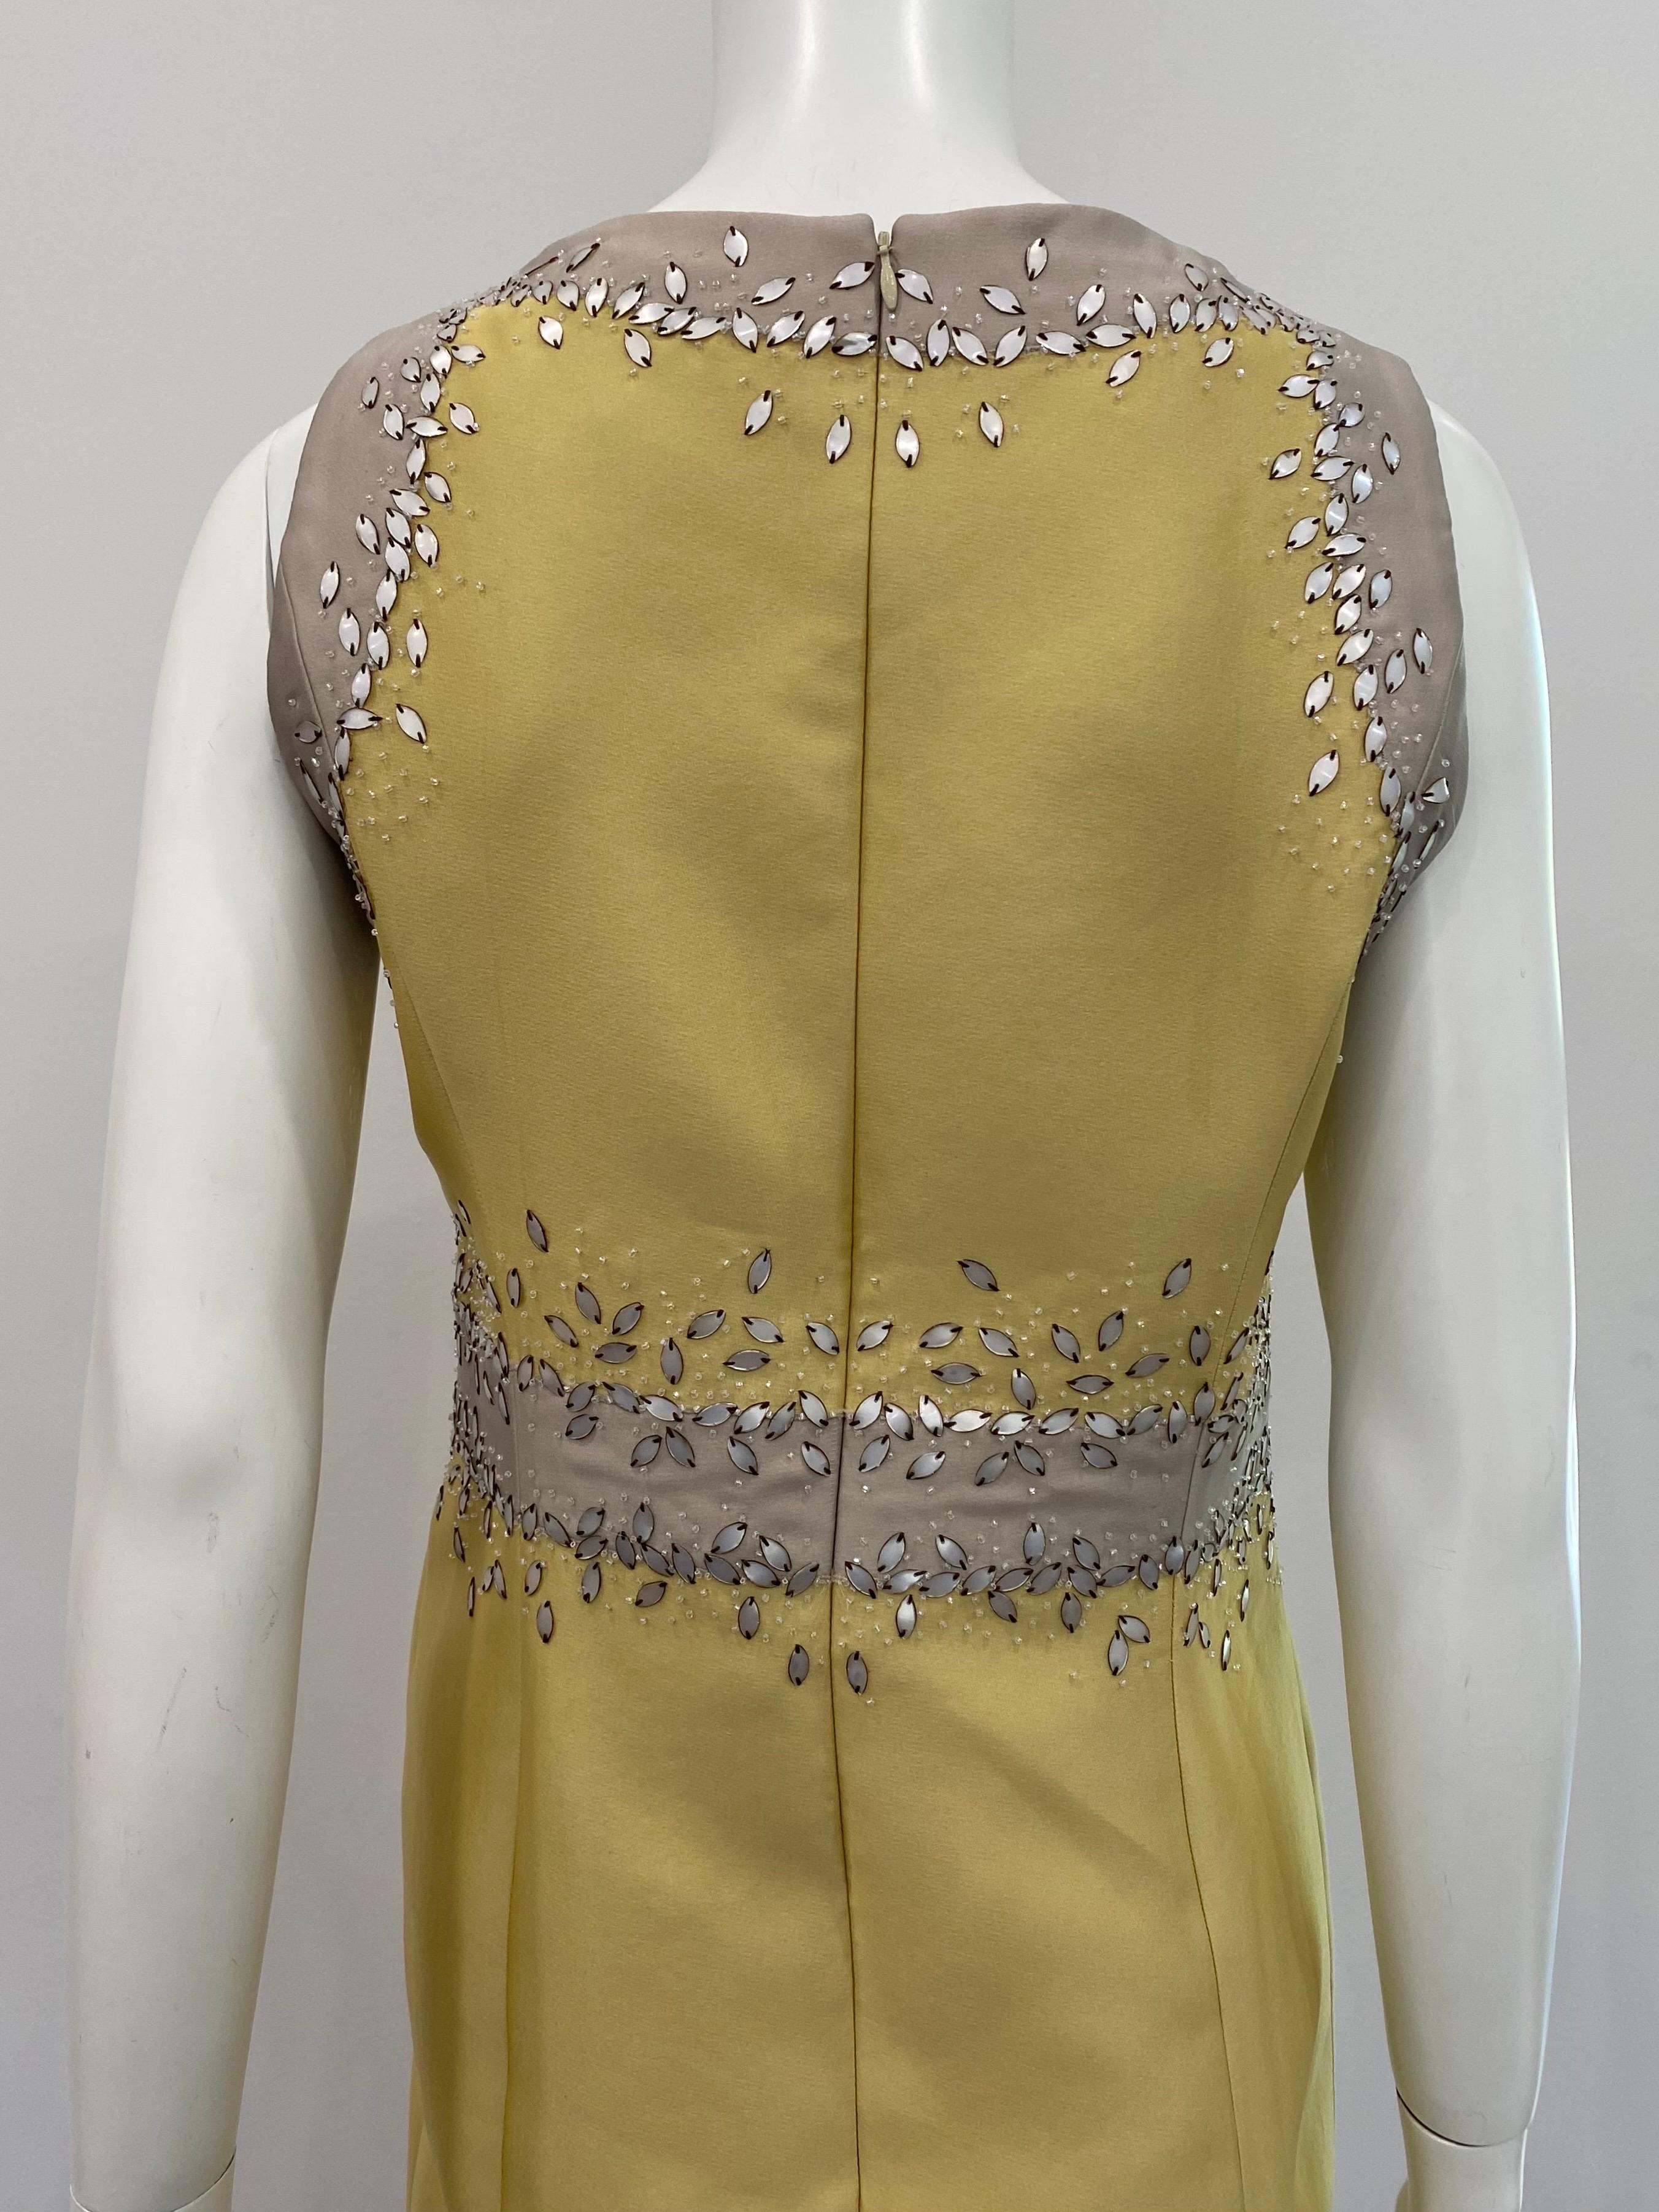 Carolina Herrera Mustard Beaded Silk Sleeveless Dress with Jacket- Sz 10 5